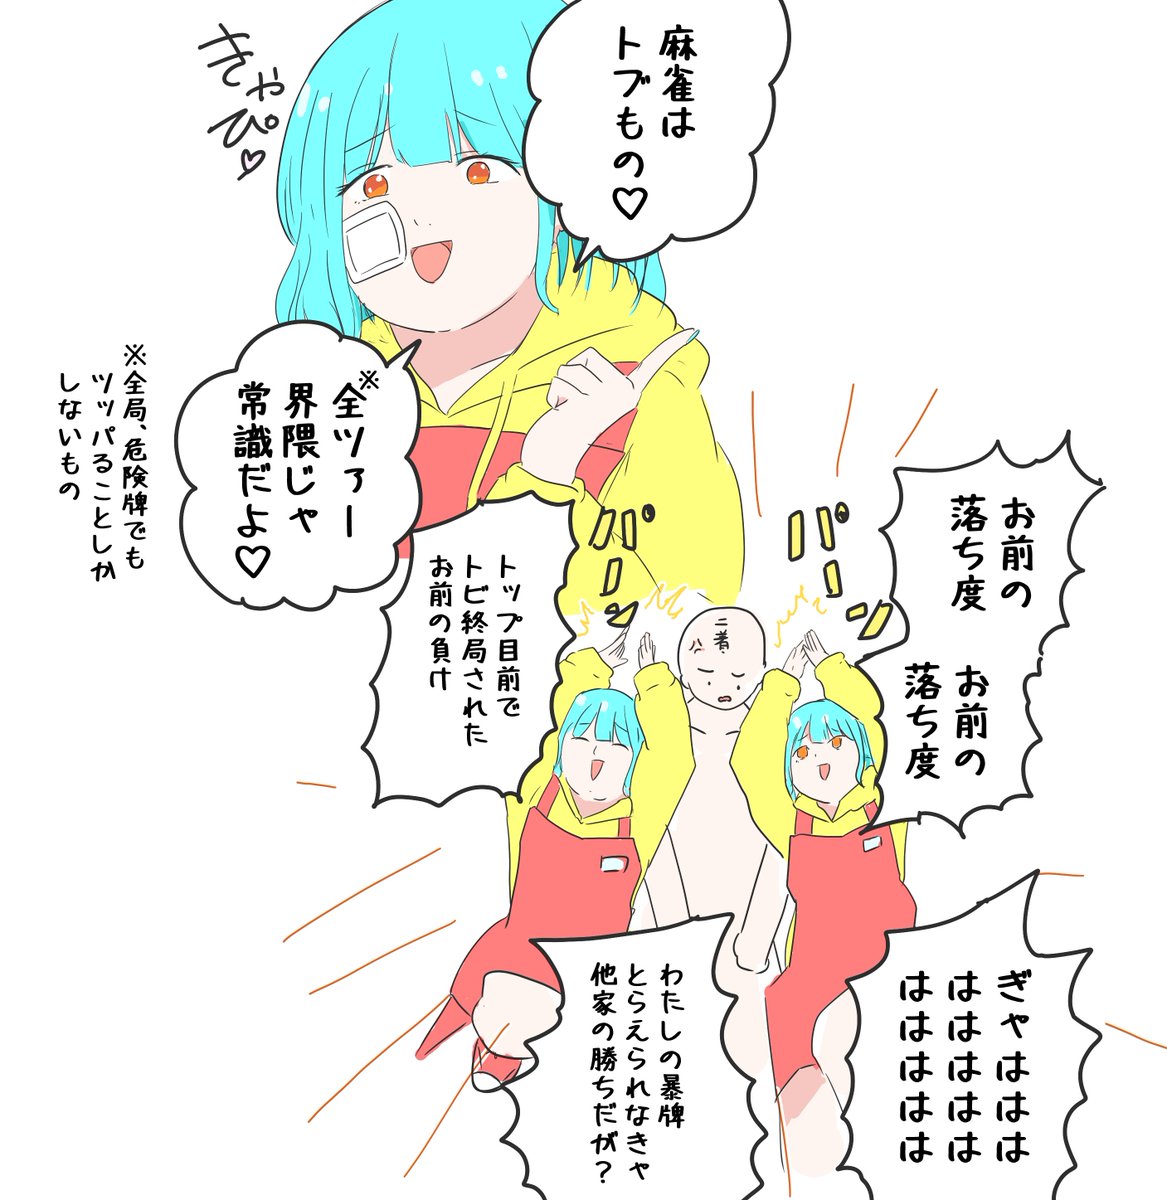 みずきけい📘漫画•イラスト🀄️麻雀 (@keimahjong) on Twitter photo 2024-05-11 03:41:31